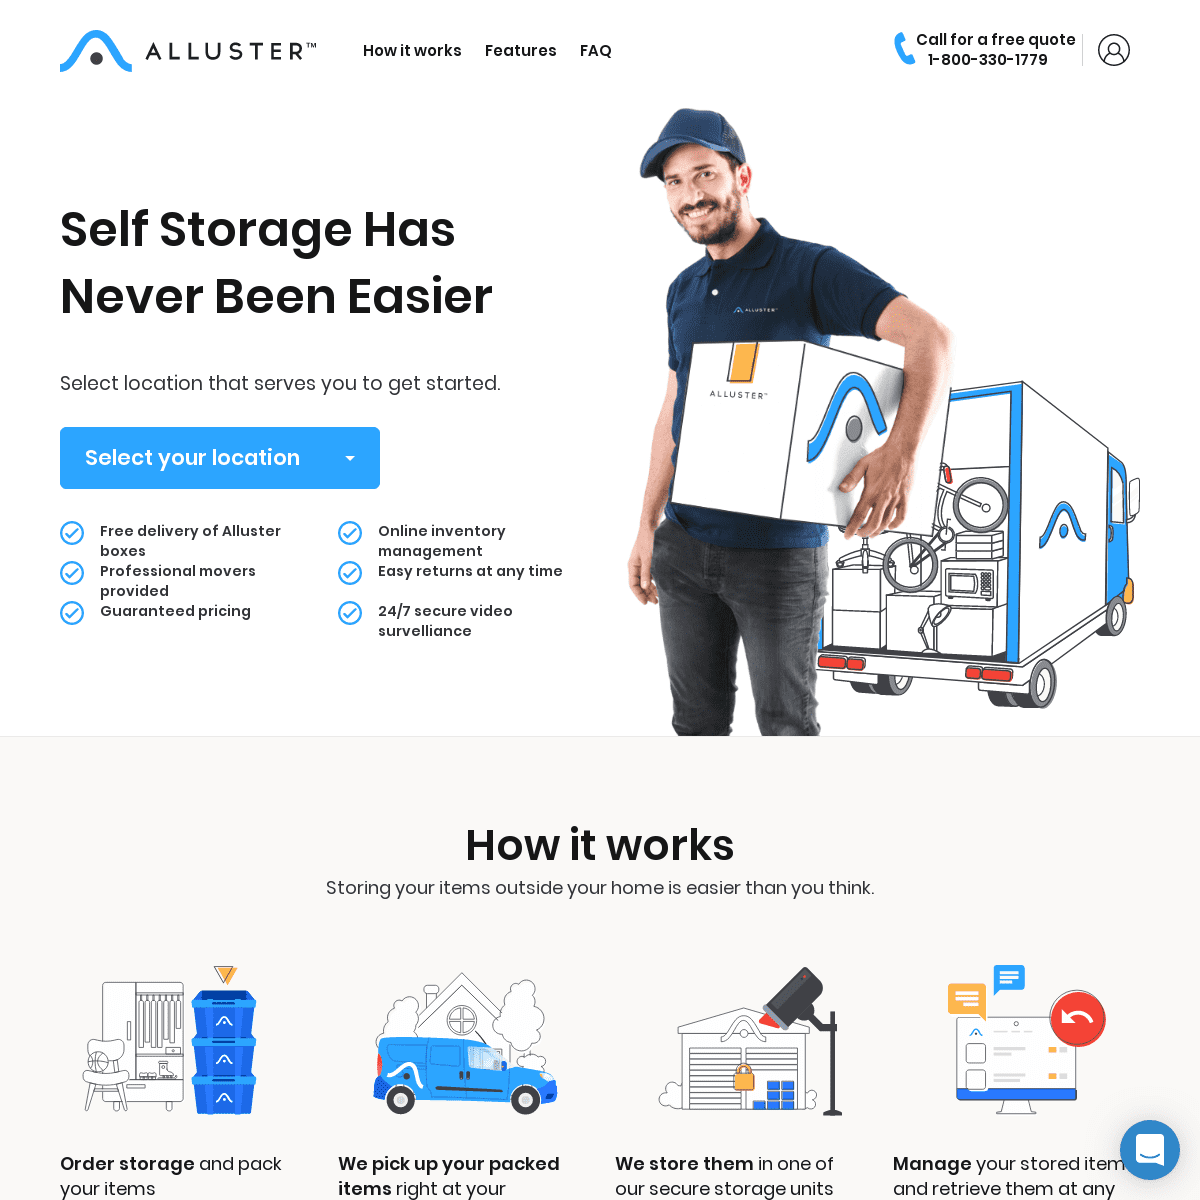 A complete backup of alluster.com